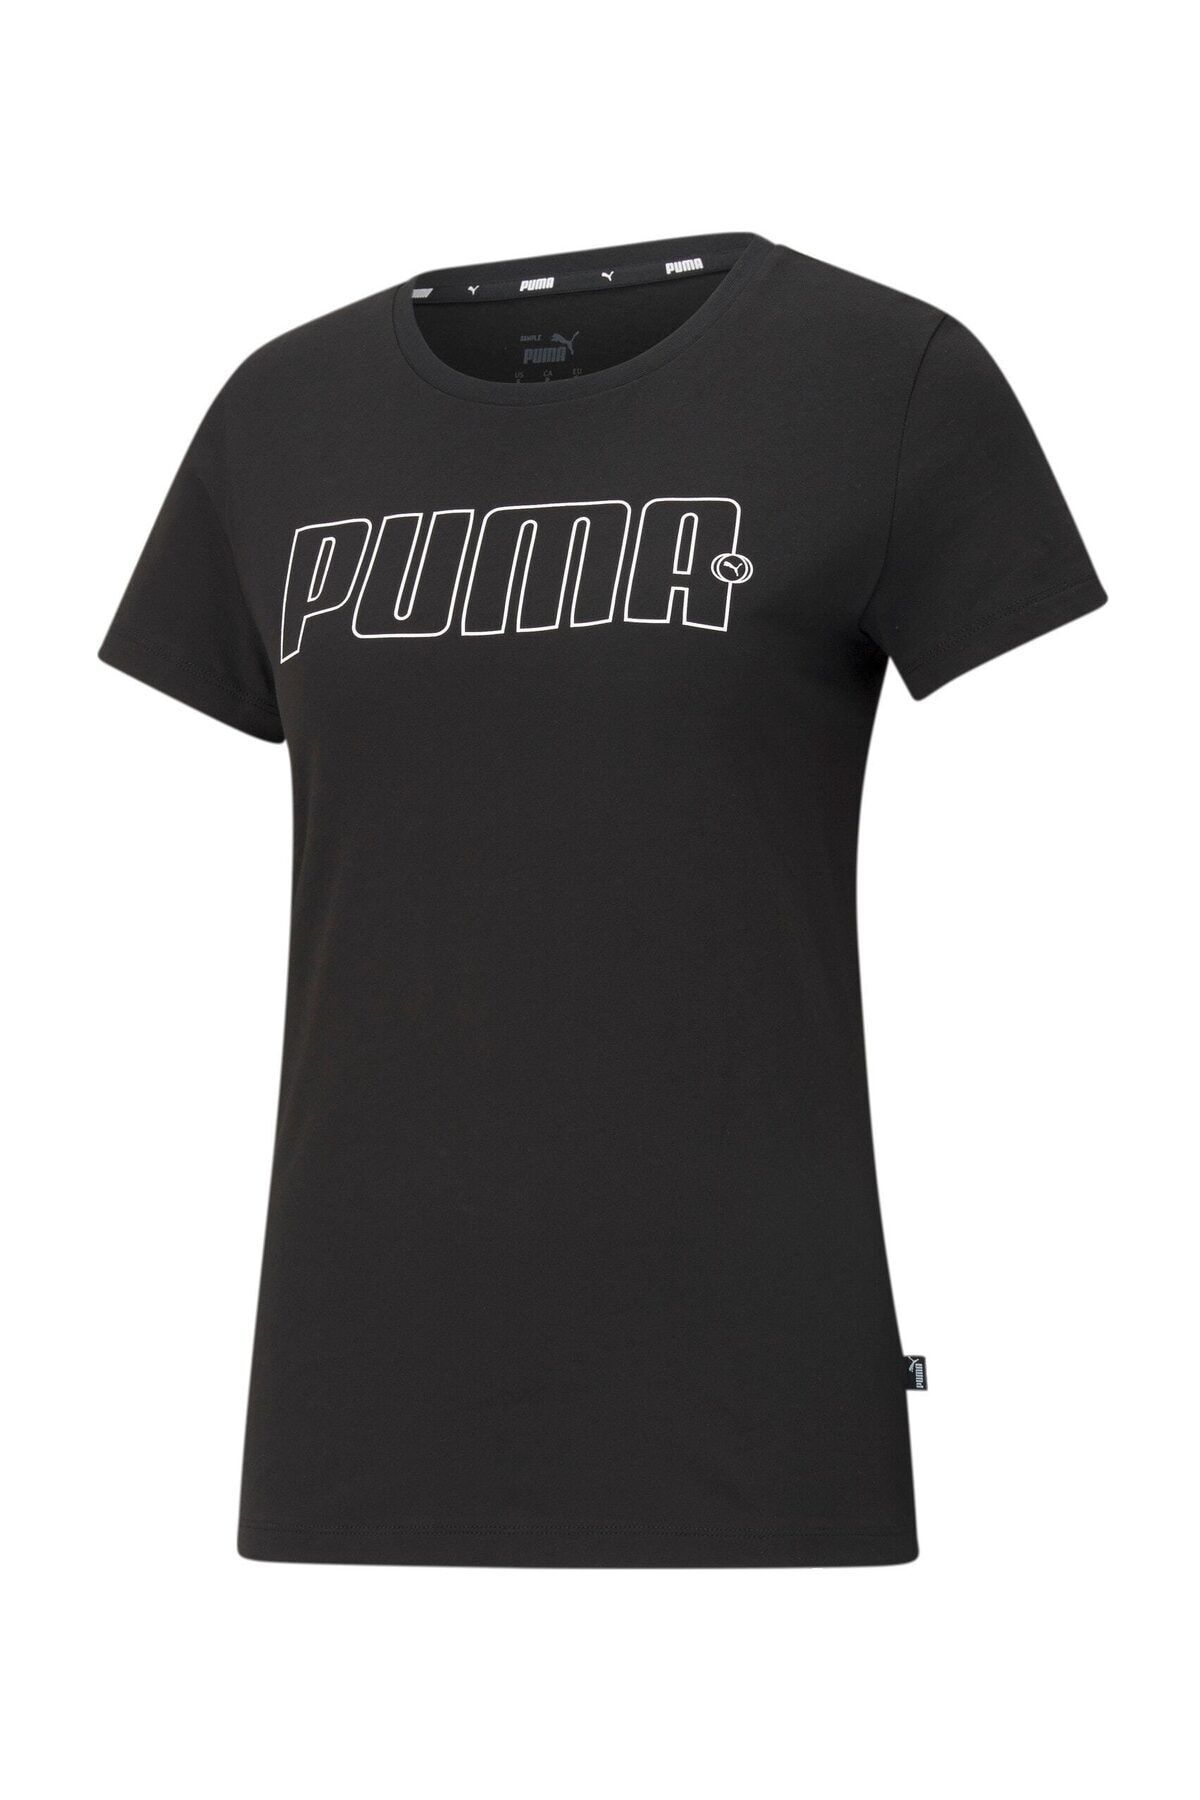 Puma Rebel Kadın Grafikli T-shirt